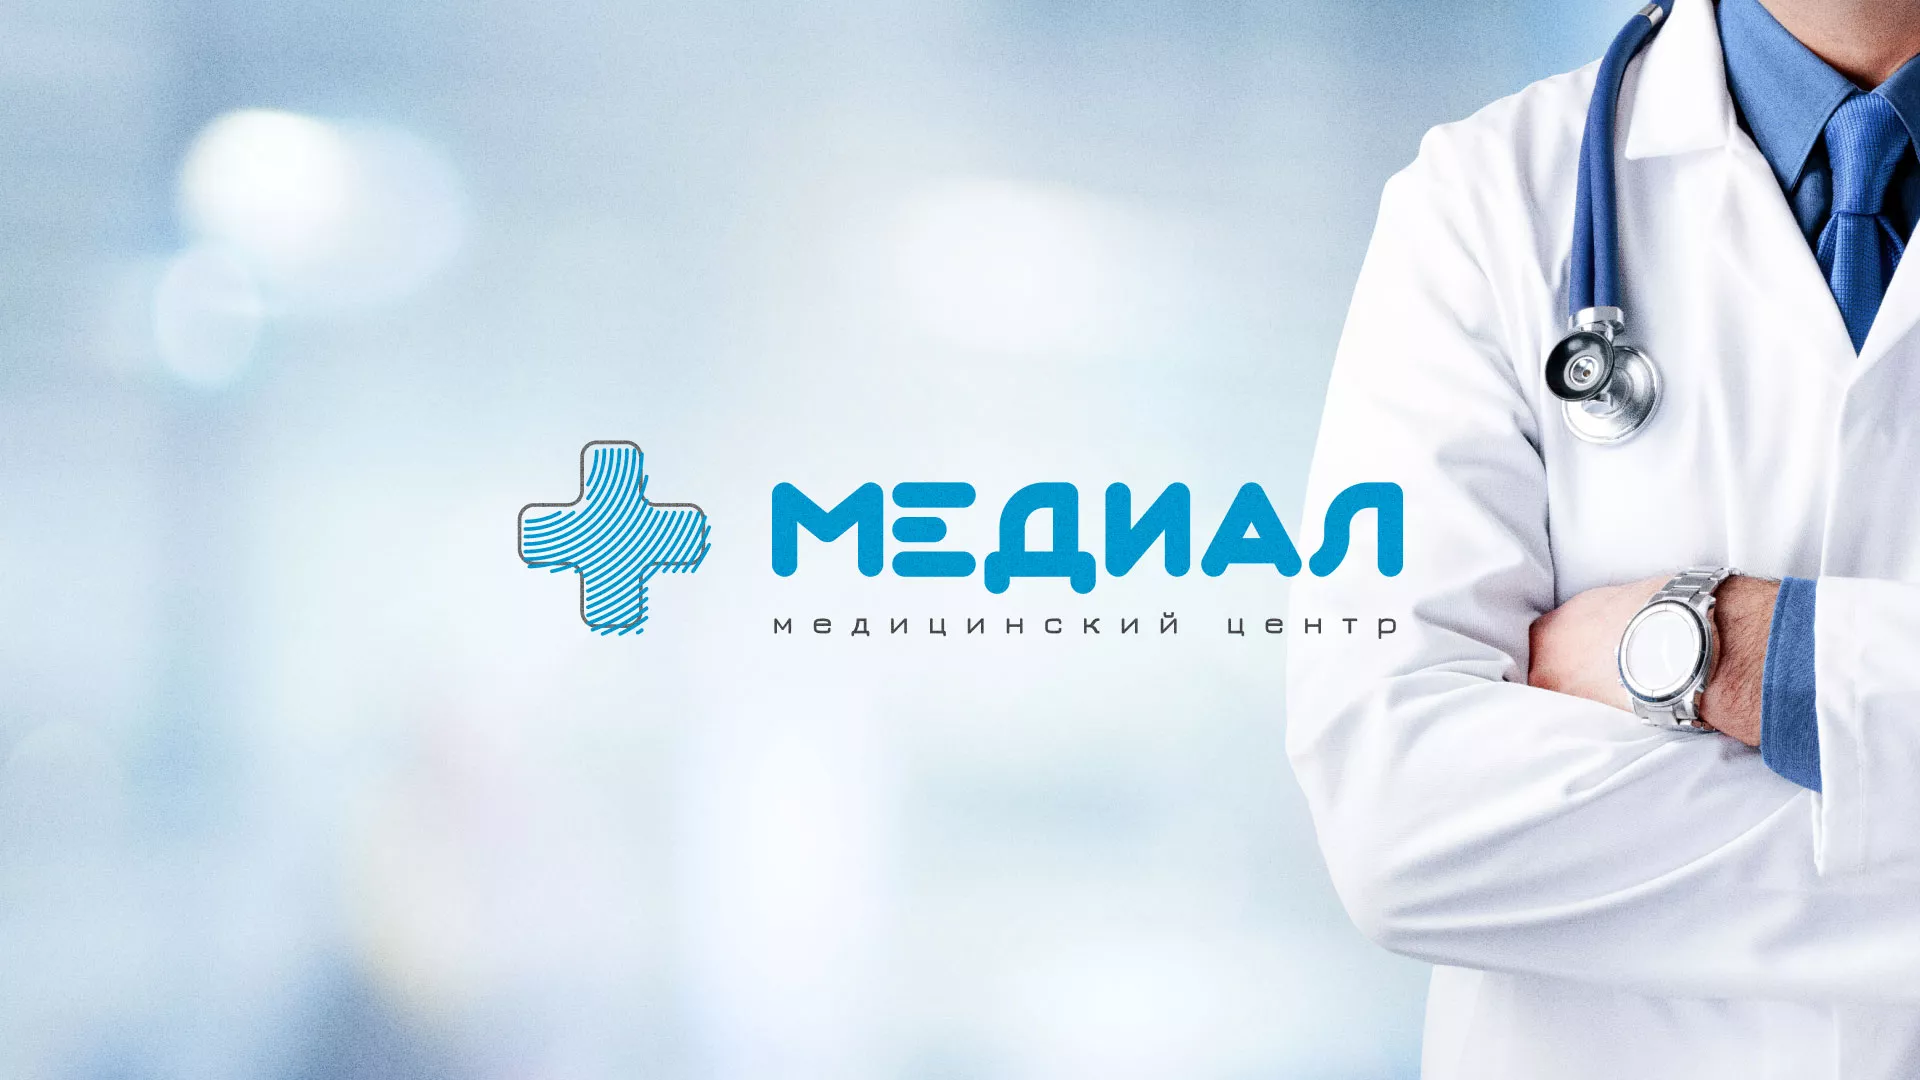 Создание сайта для медицинского центра «Медиал» в Мытищах